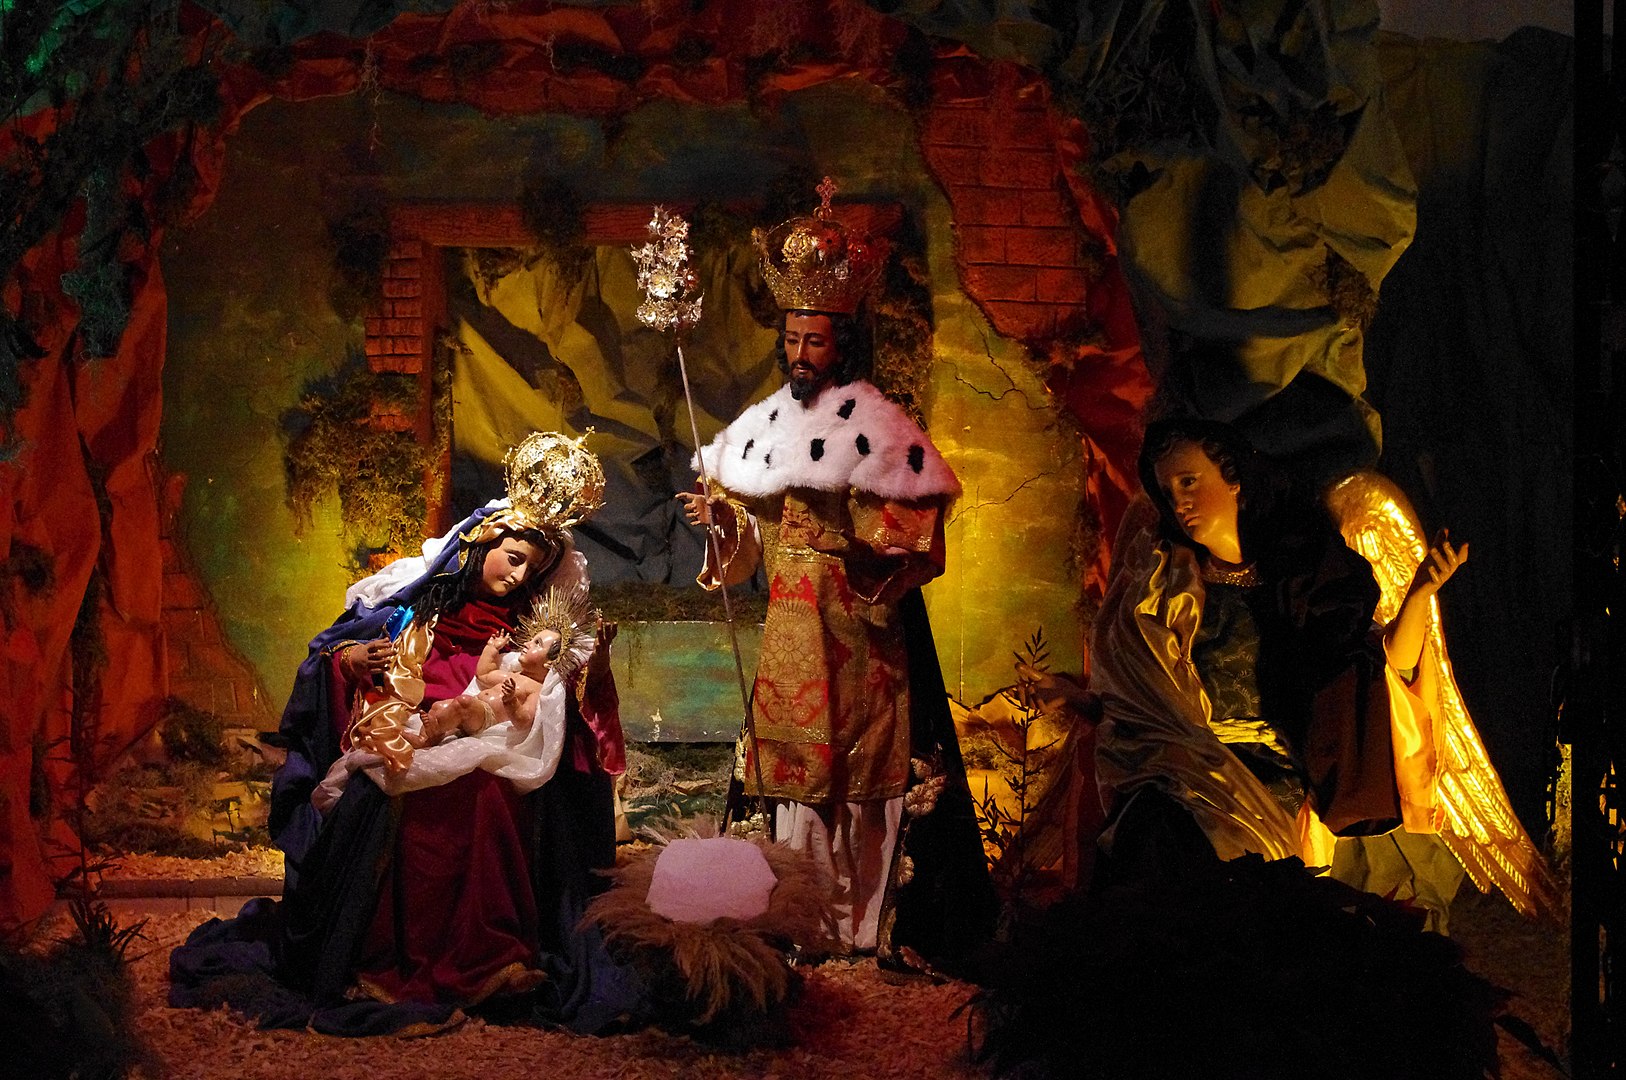 Marie mit au monde son fils premier-né, elle l’emmaillota et le coucha dans une mangeoire (Luc 2,7). Scène de la Nativité, crèche de Noël, cathédrale d'Antigua, Guatemala | © Ericwaltr - CC BY-SA 3.0